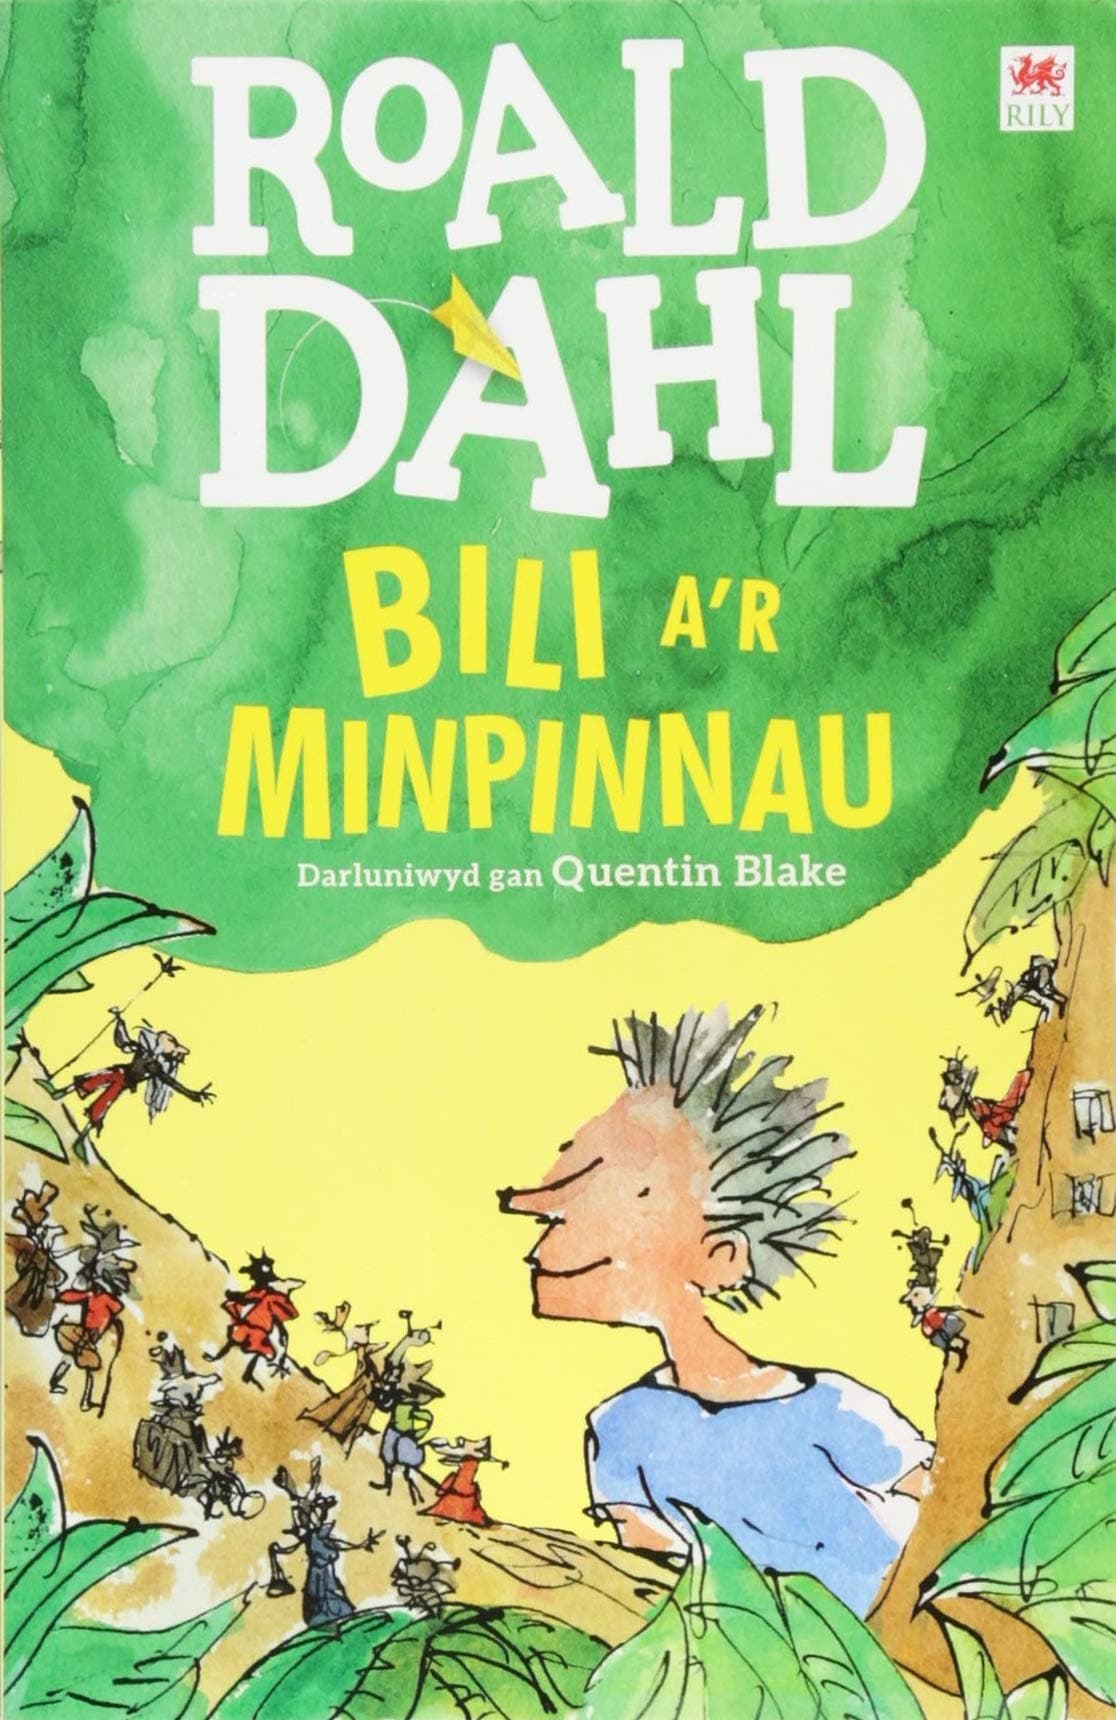 Bili a'r Minpinnau Welsh translantion of Billy and the Minipins. By Roald Dahl 